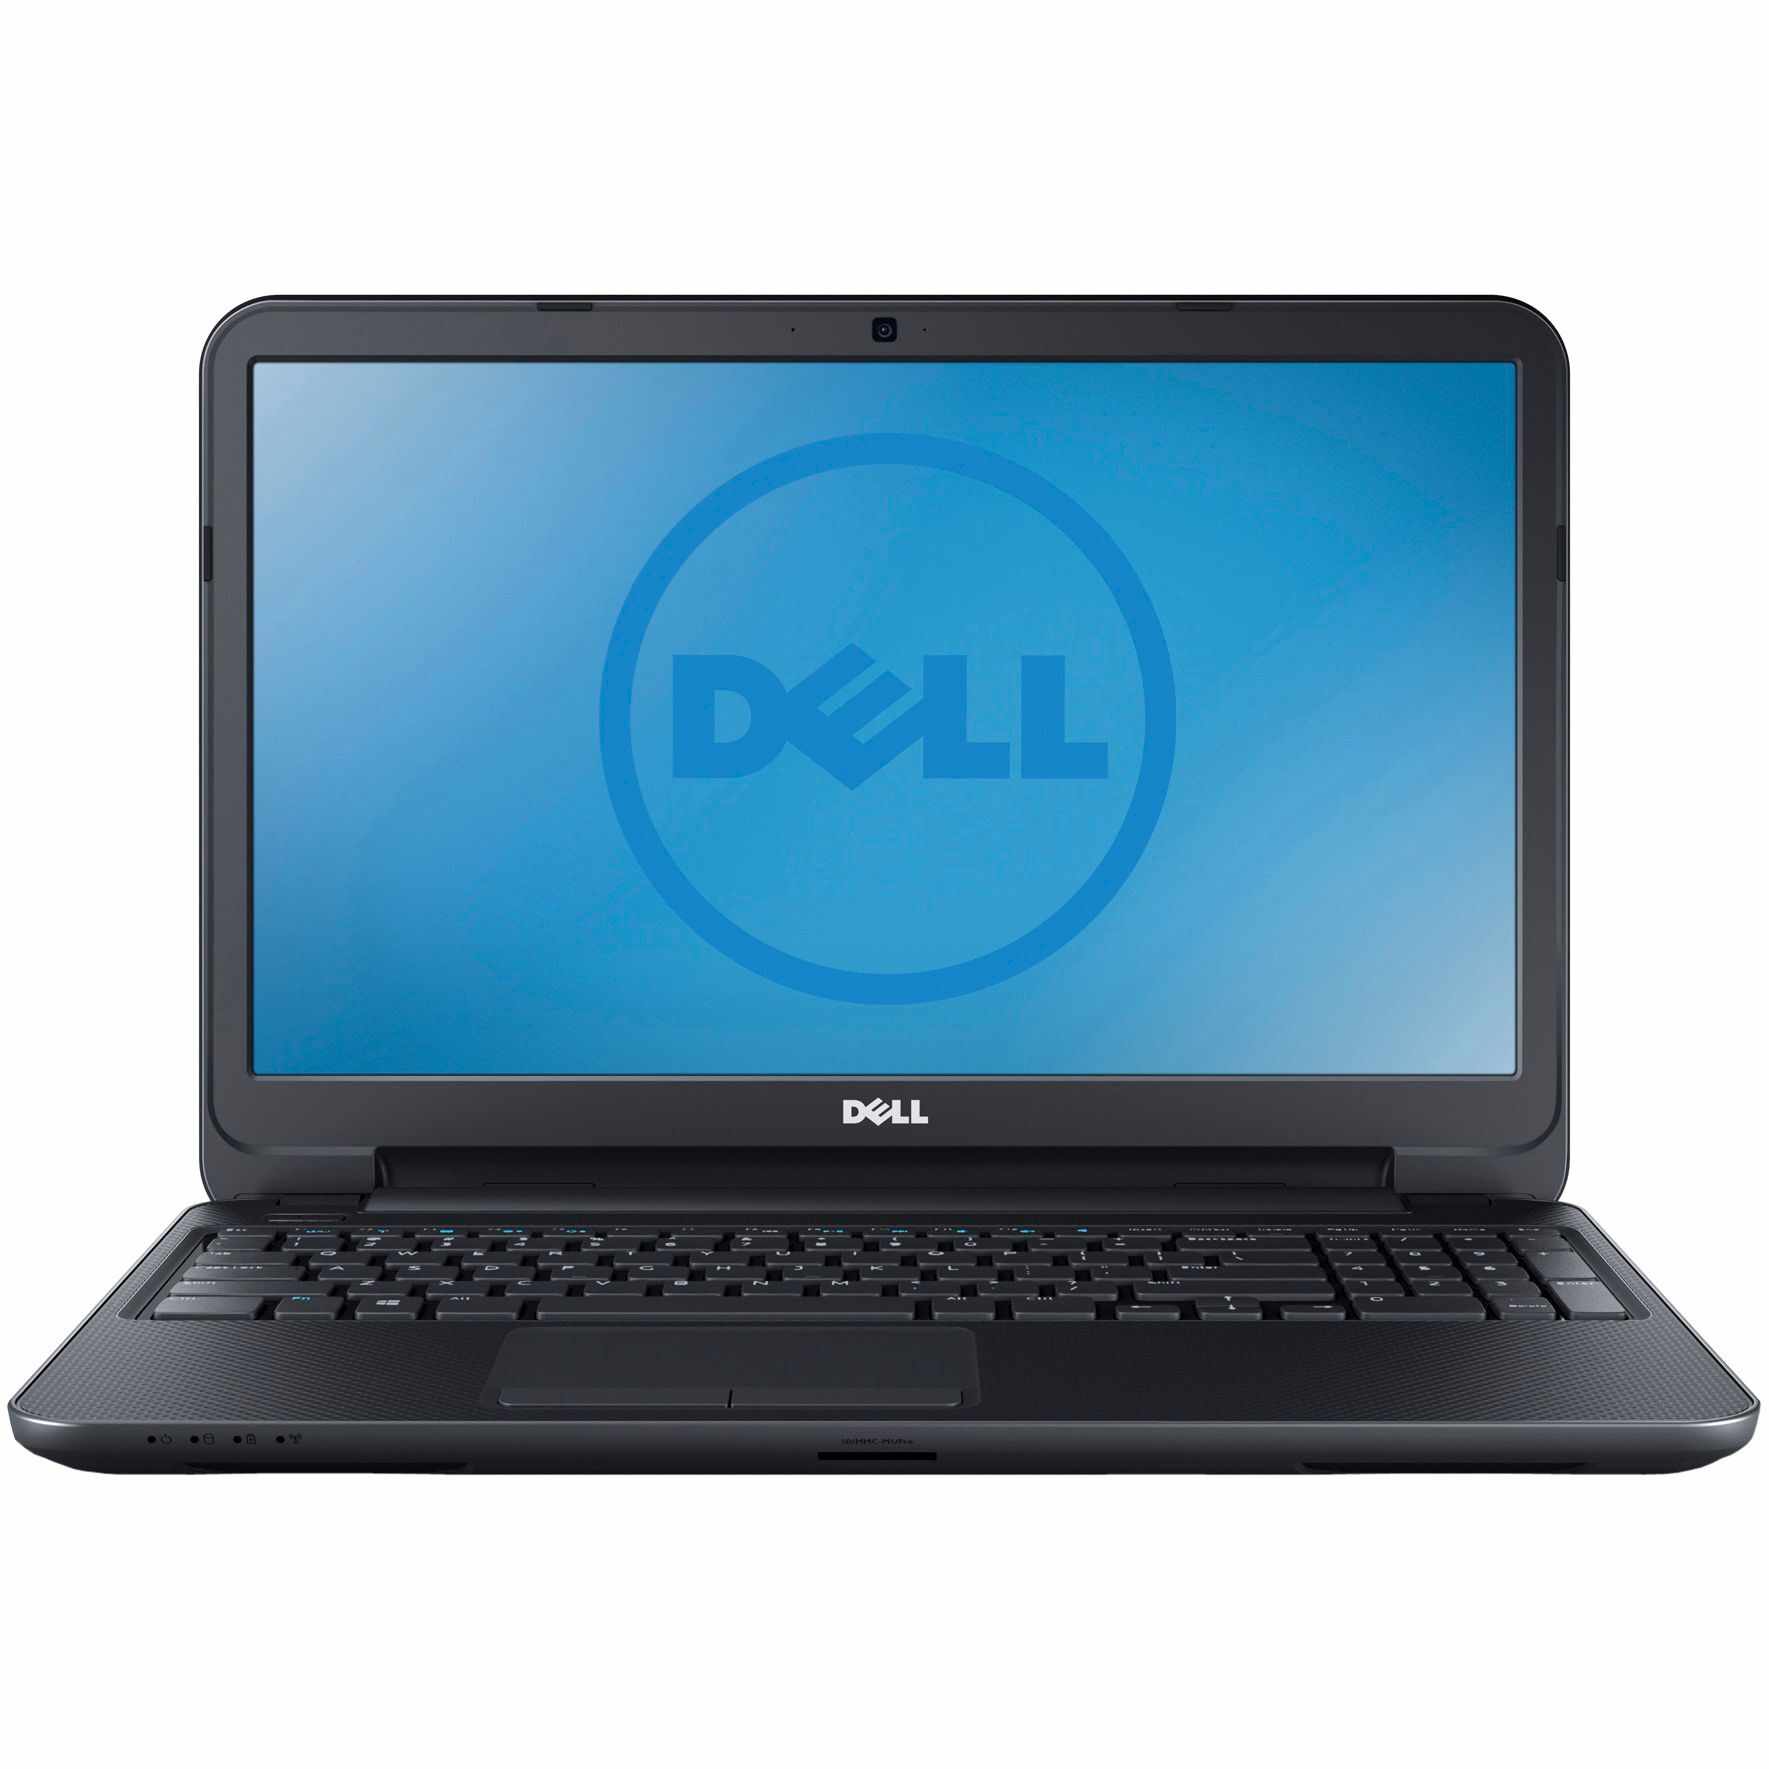 Laptop Second Hand DELL Inspiron 3537, Intel Core i3-4010U 1.70GHz, 6GB DDR3, 500GB SATA, 15.6 Inch HD, Tastatura Numerica, Webcam, Grad A-